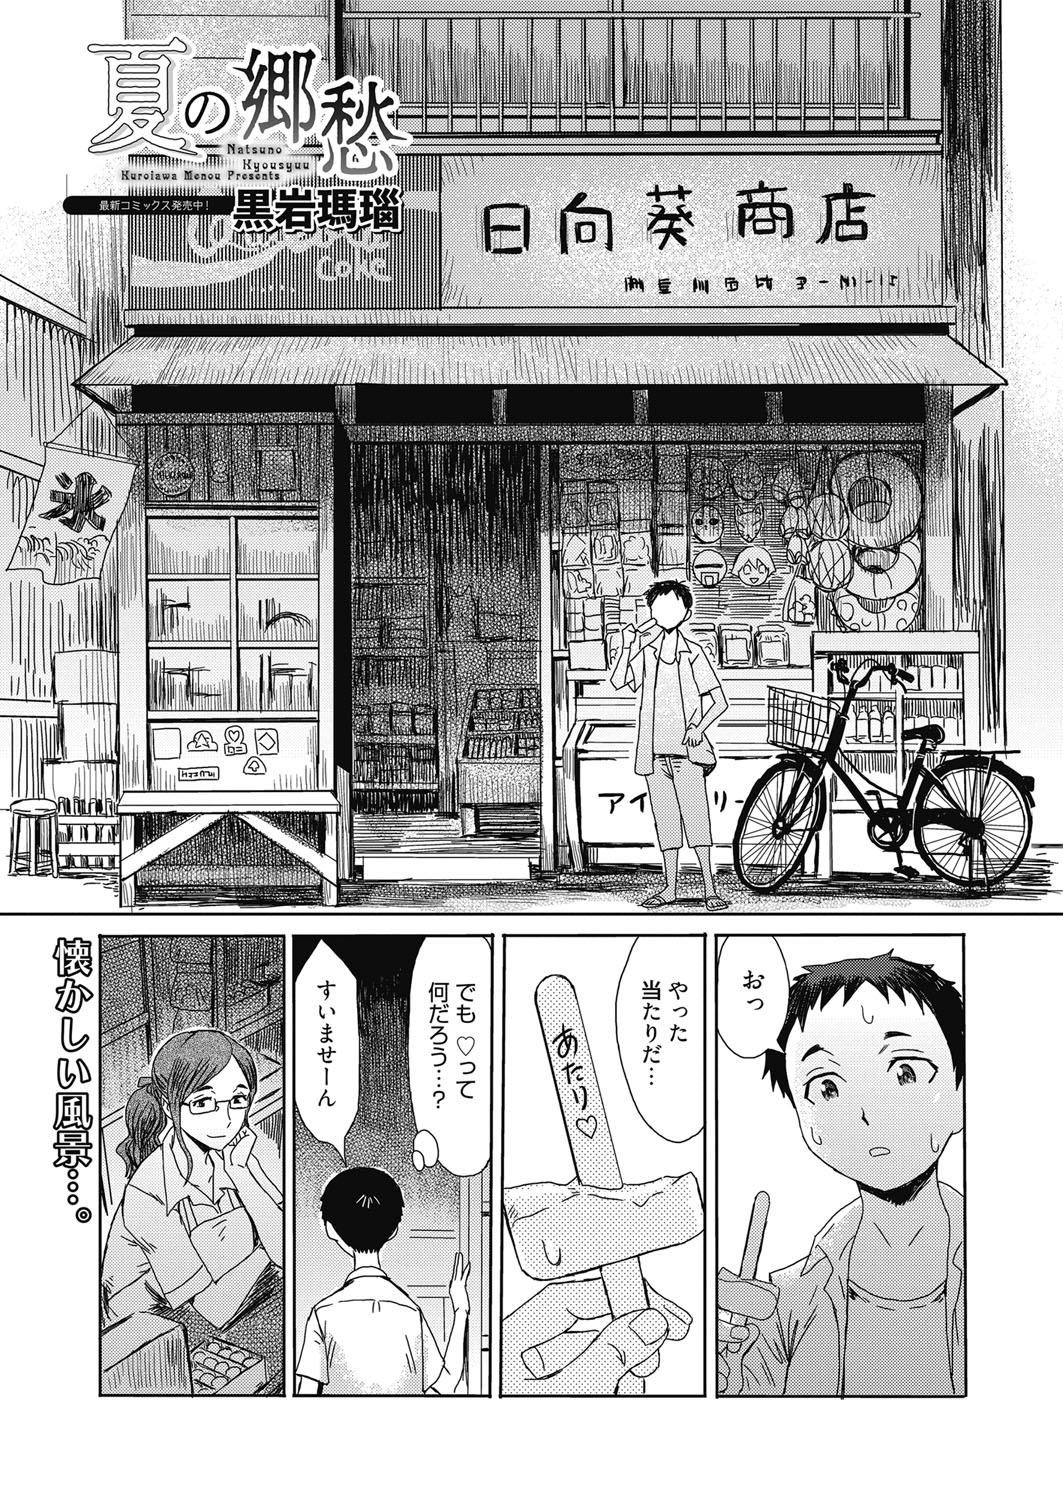 web 漫画ばんがいち Vol.23